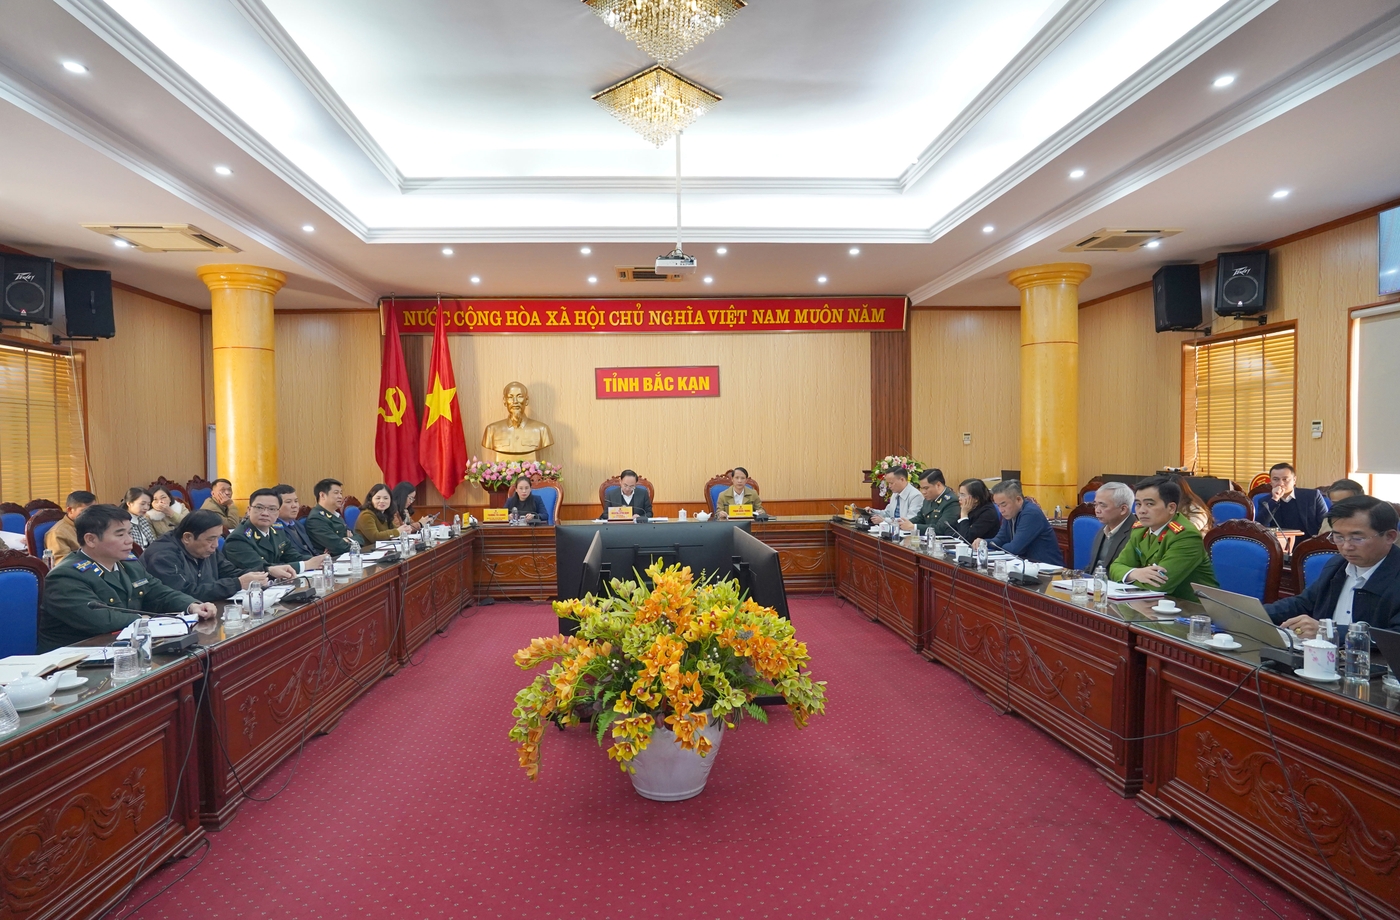 Đồng chí Nguyễn Đăng Bình, Phó Bí thư Tỉnh ủy, Chủ tịch UBND tỉnh dự hội nghị tại điểm cầu trực tuyến tỉnh Bắc Kạn.